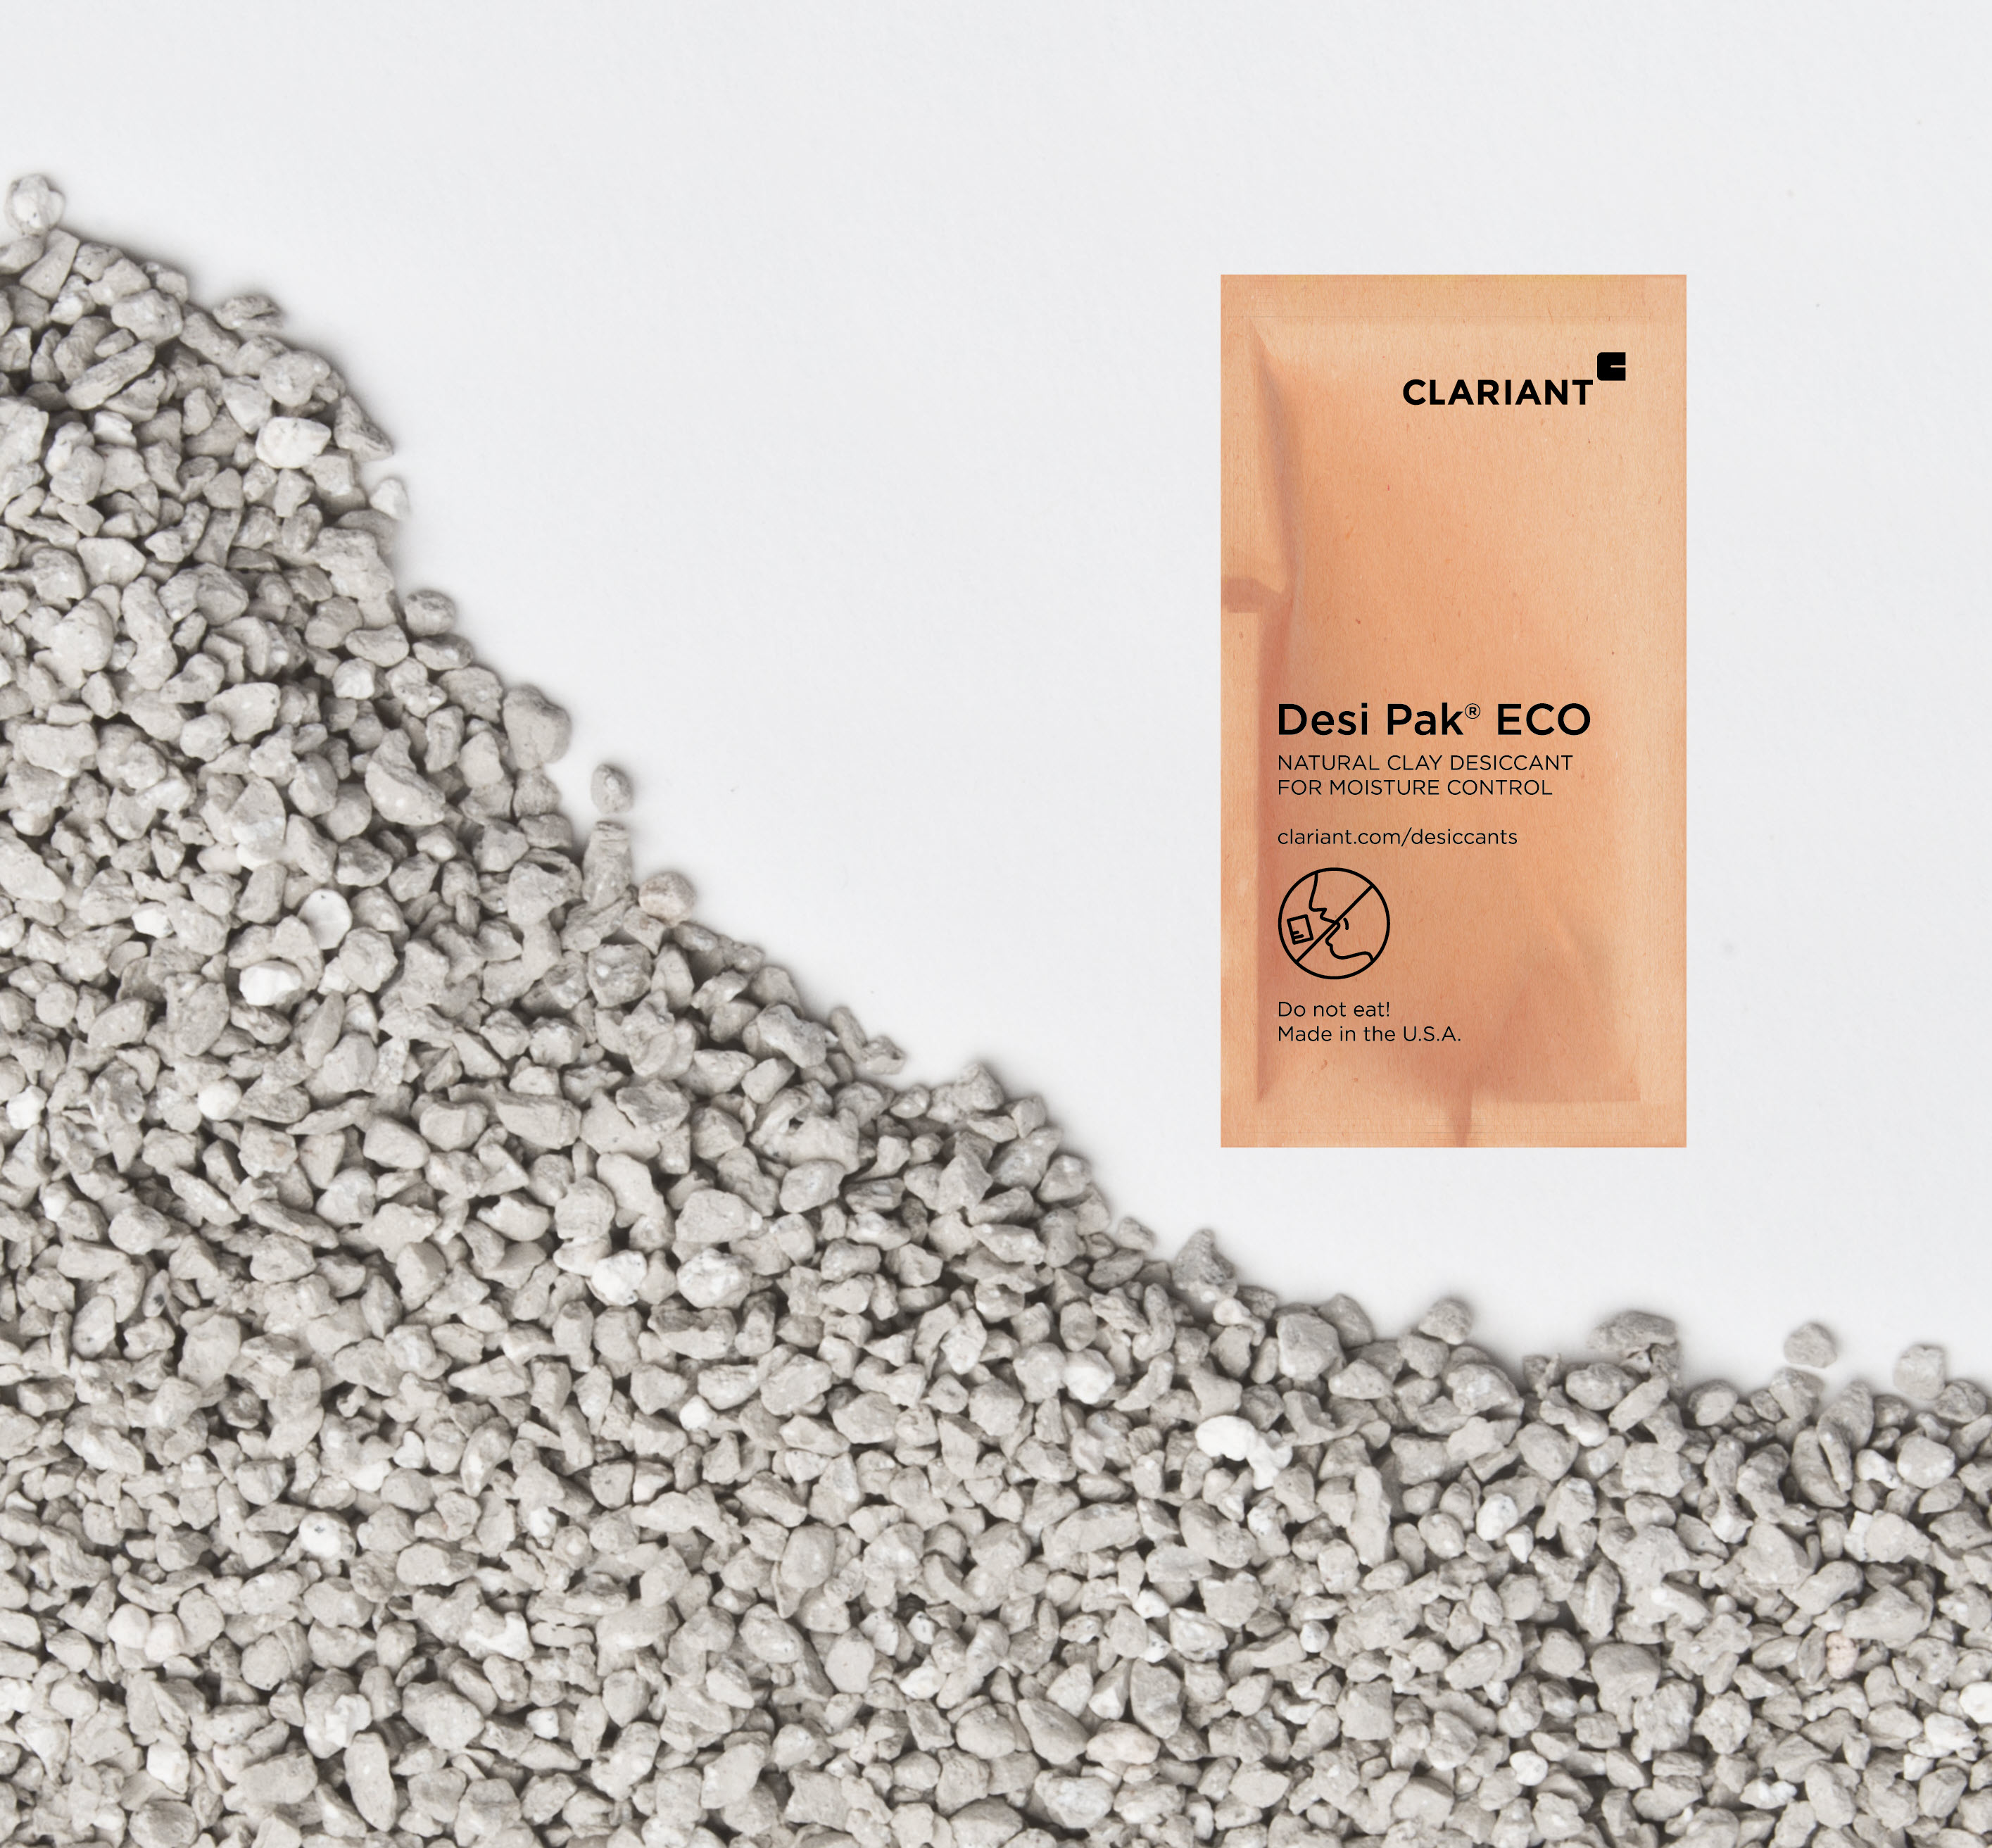 科莱恩推出采用生物基纸袋包装的Desi Pak ECO干燥剂。